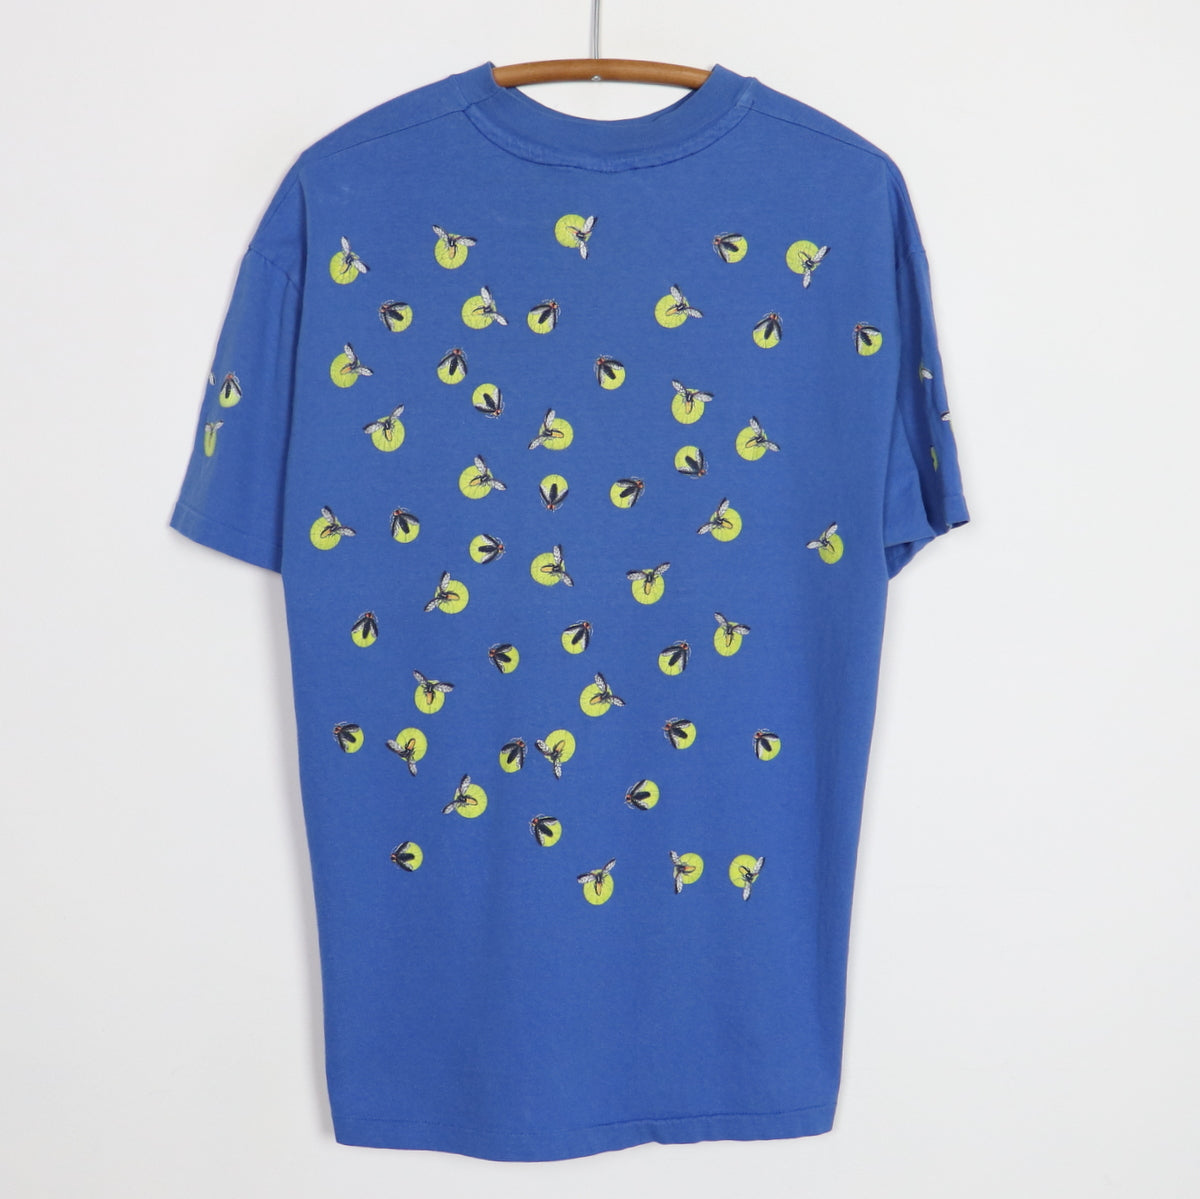 1980s Fireflies All Over Print Shirt